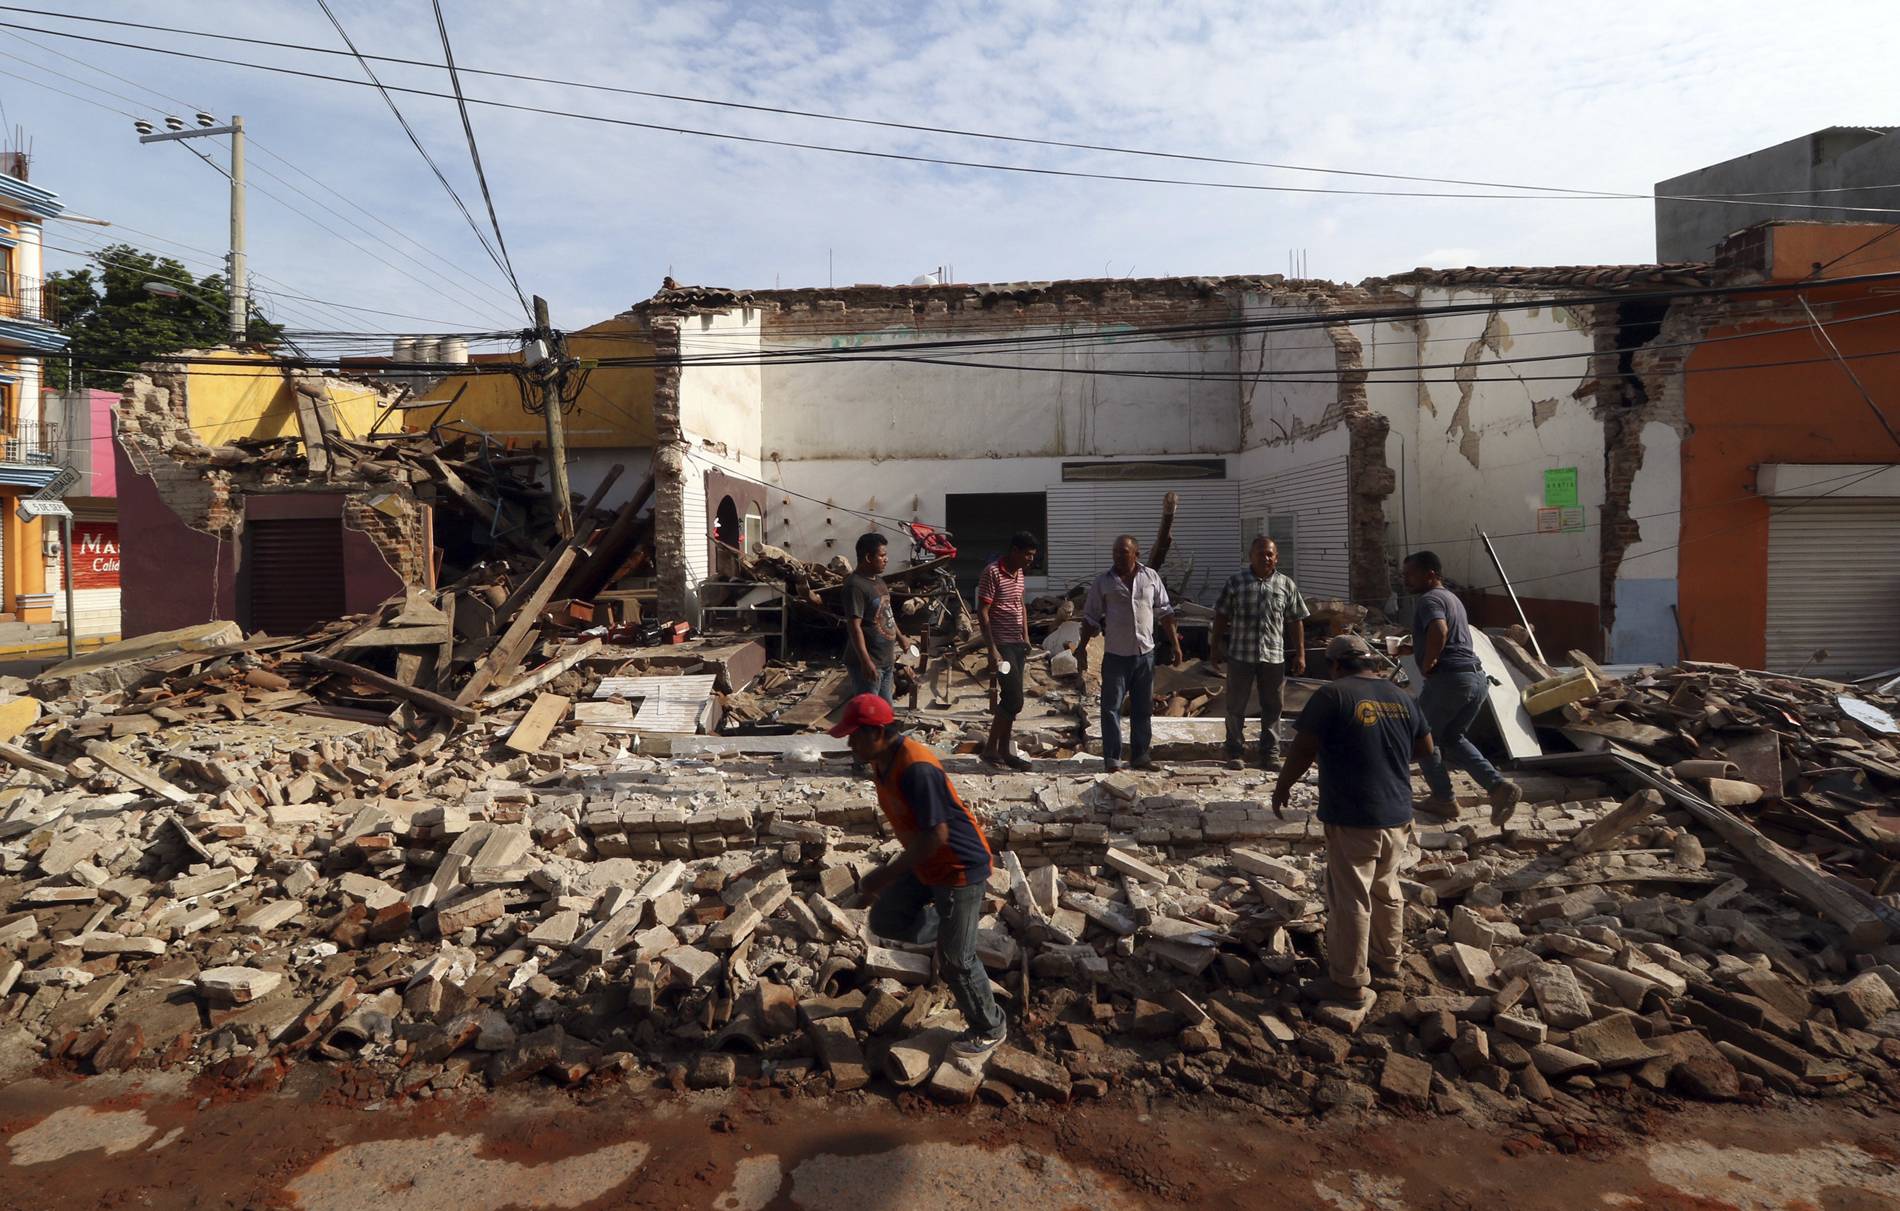 Pessoas sao vistas em volta dos escombros de um edifício após terremoto, em Oaxaca, no México